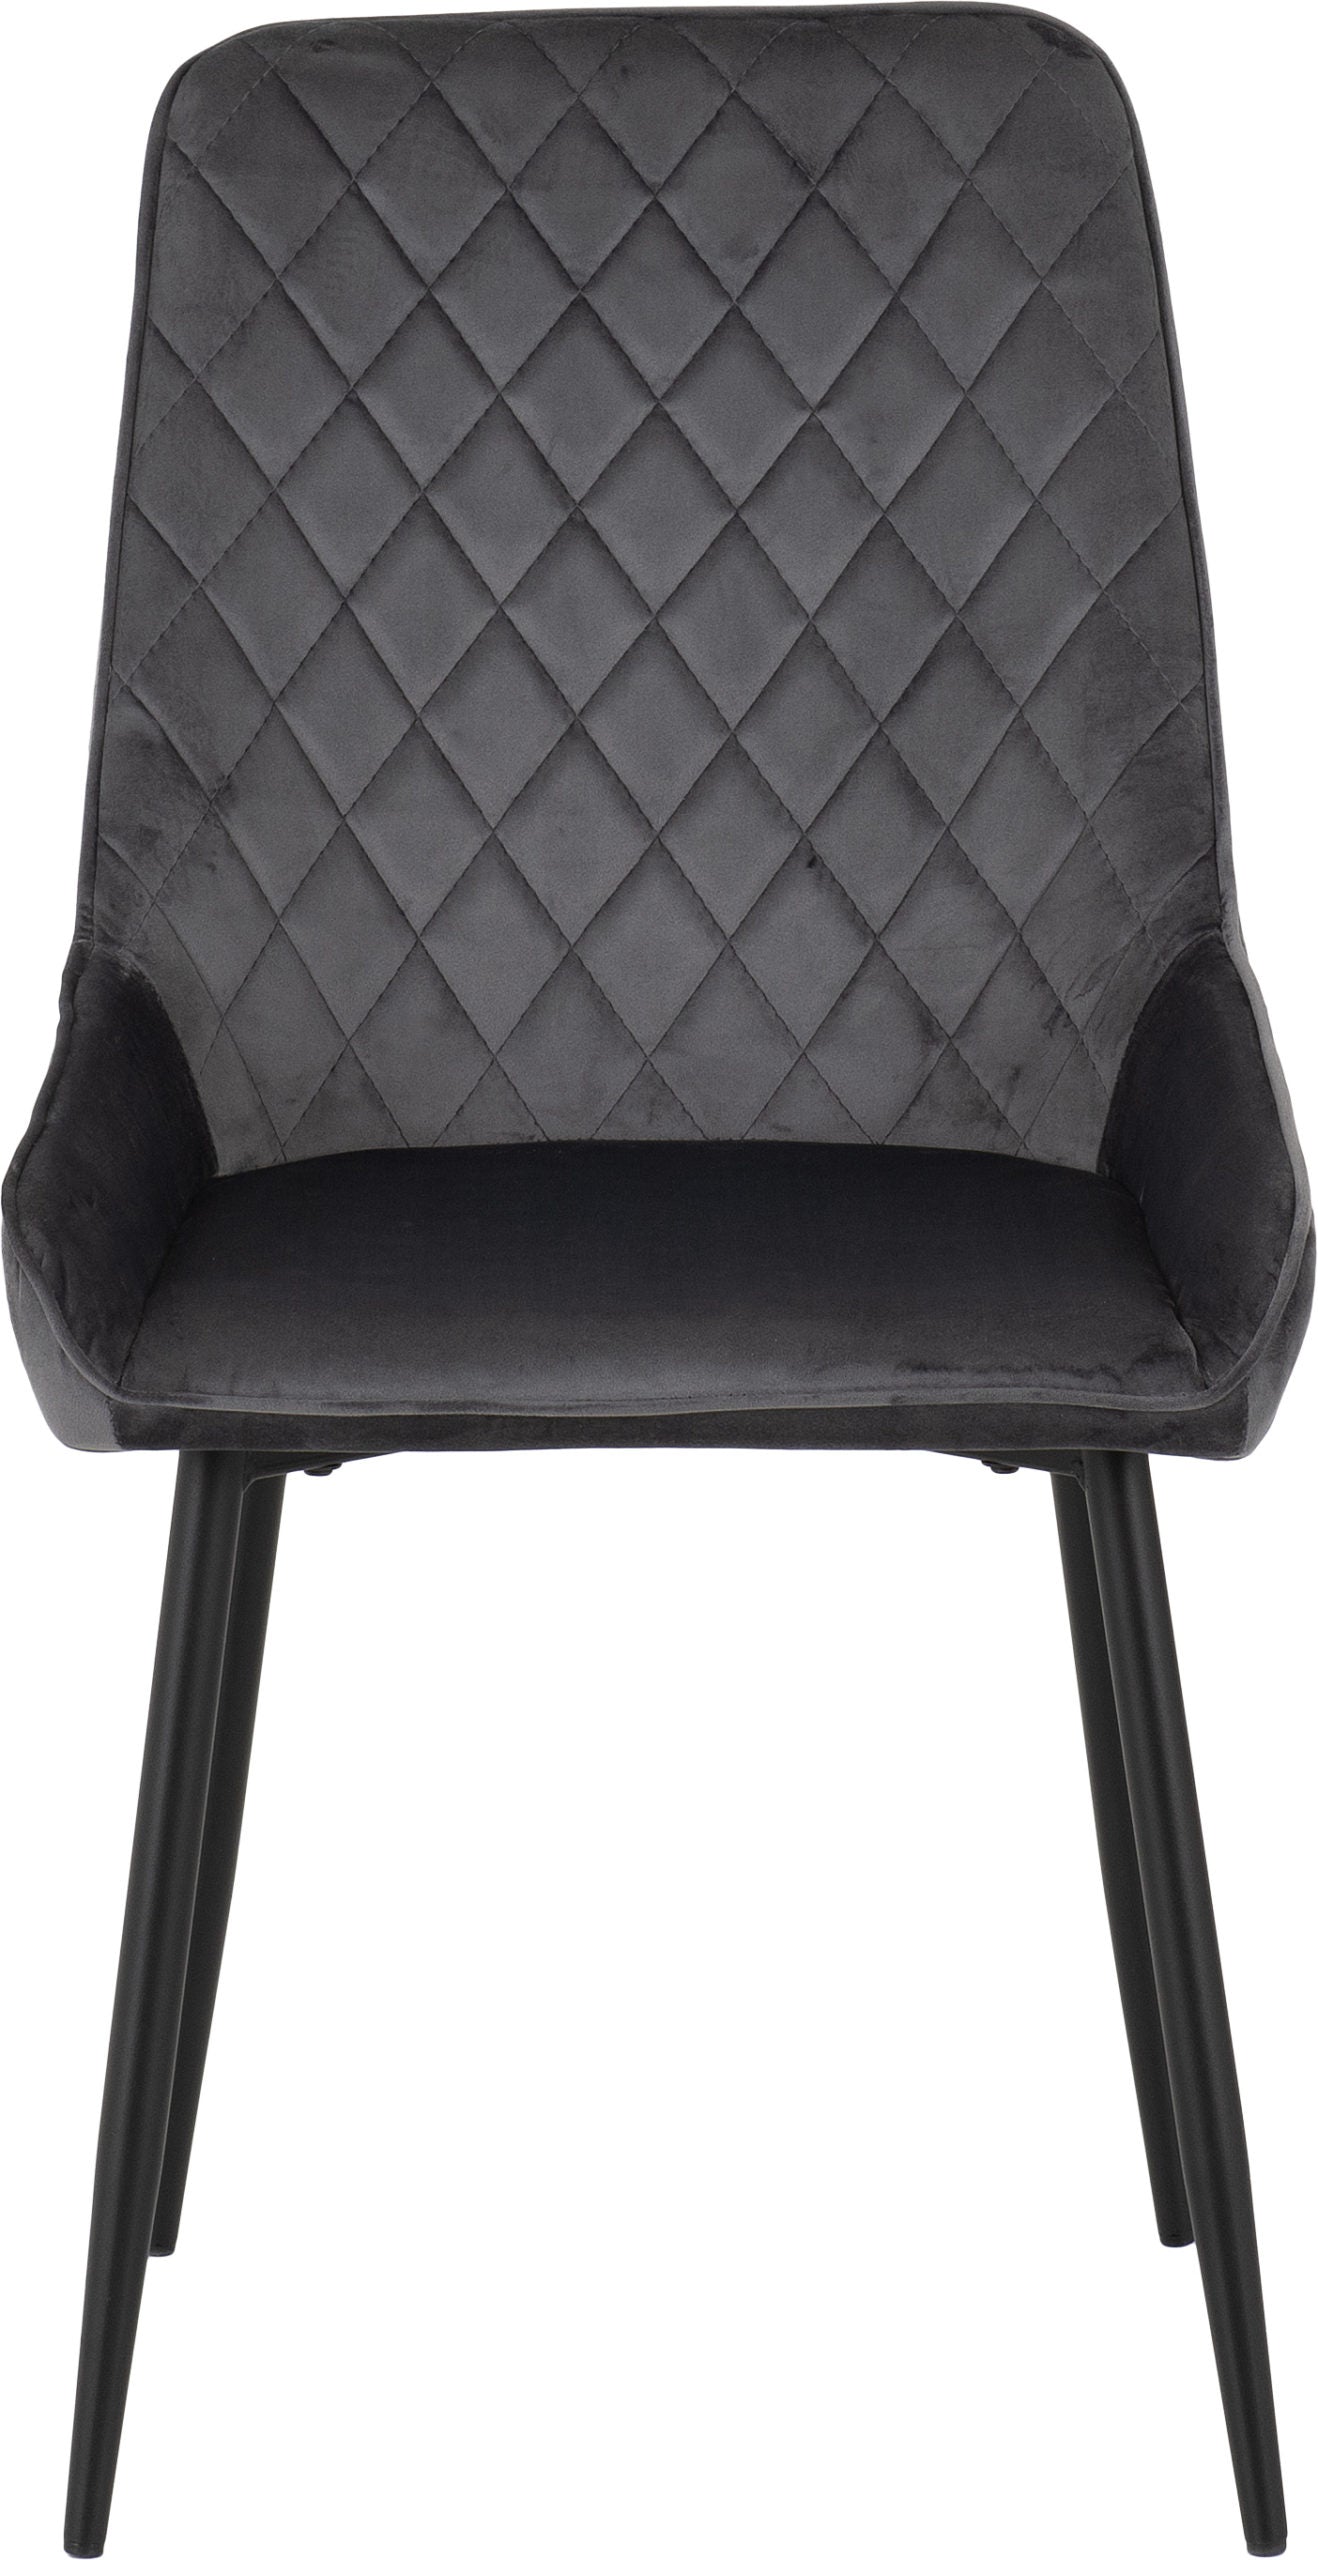 Avery Chair Black/Grey Velvet- The Right Buy Store